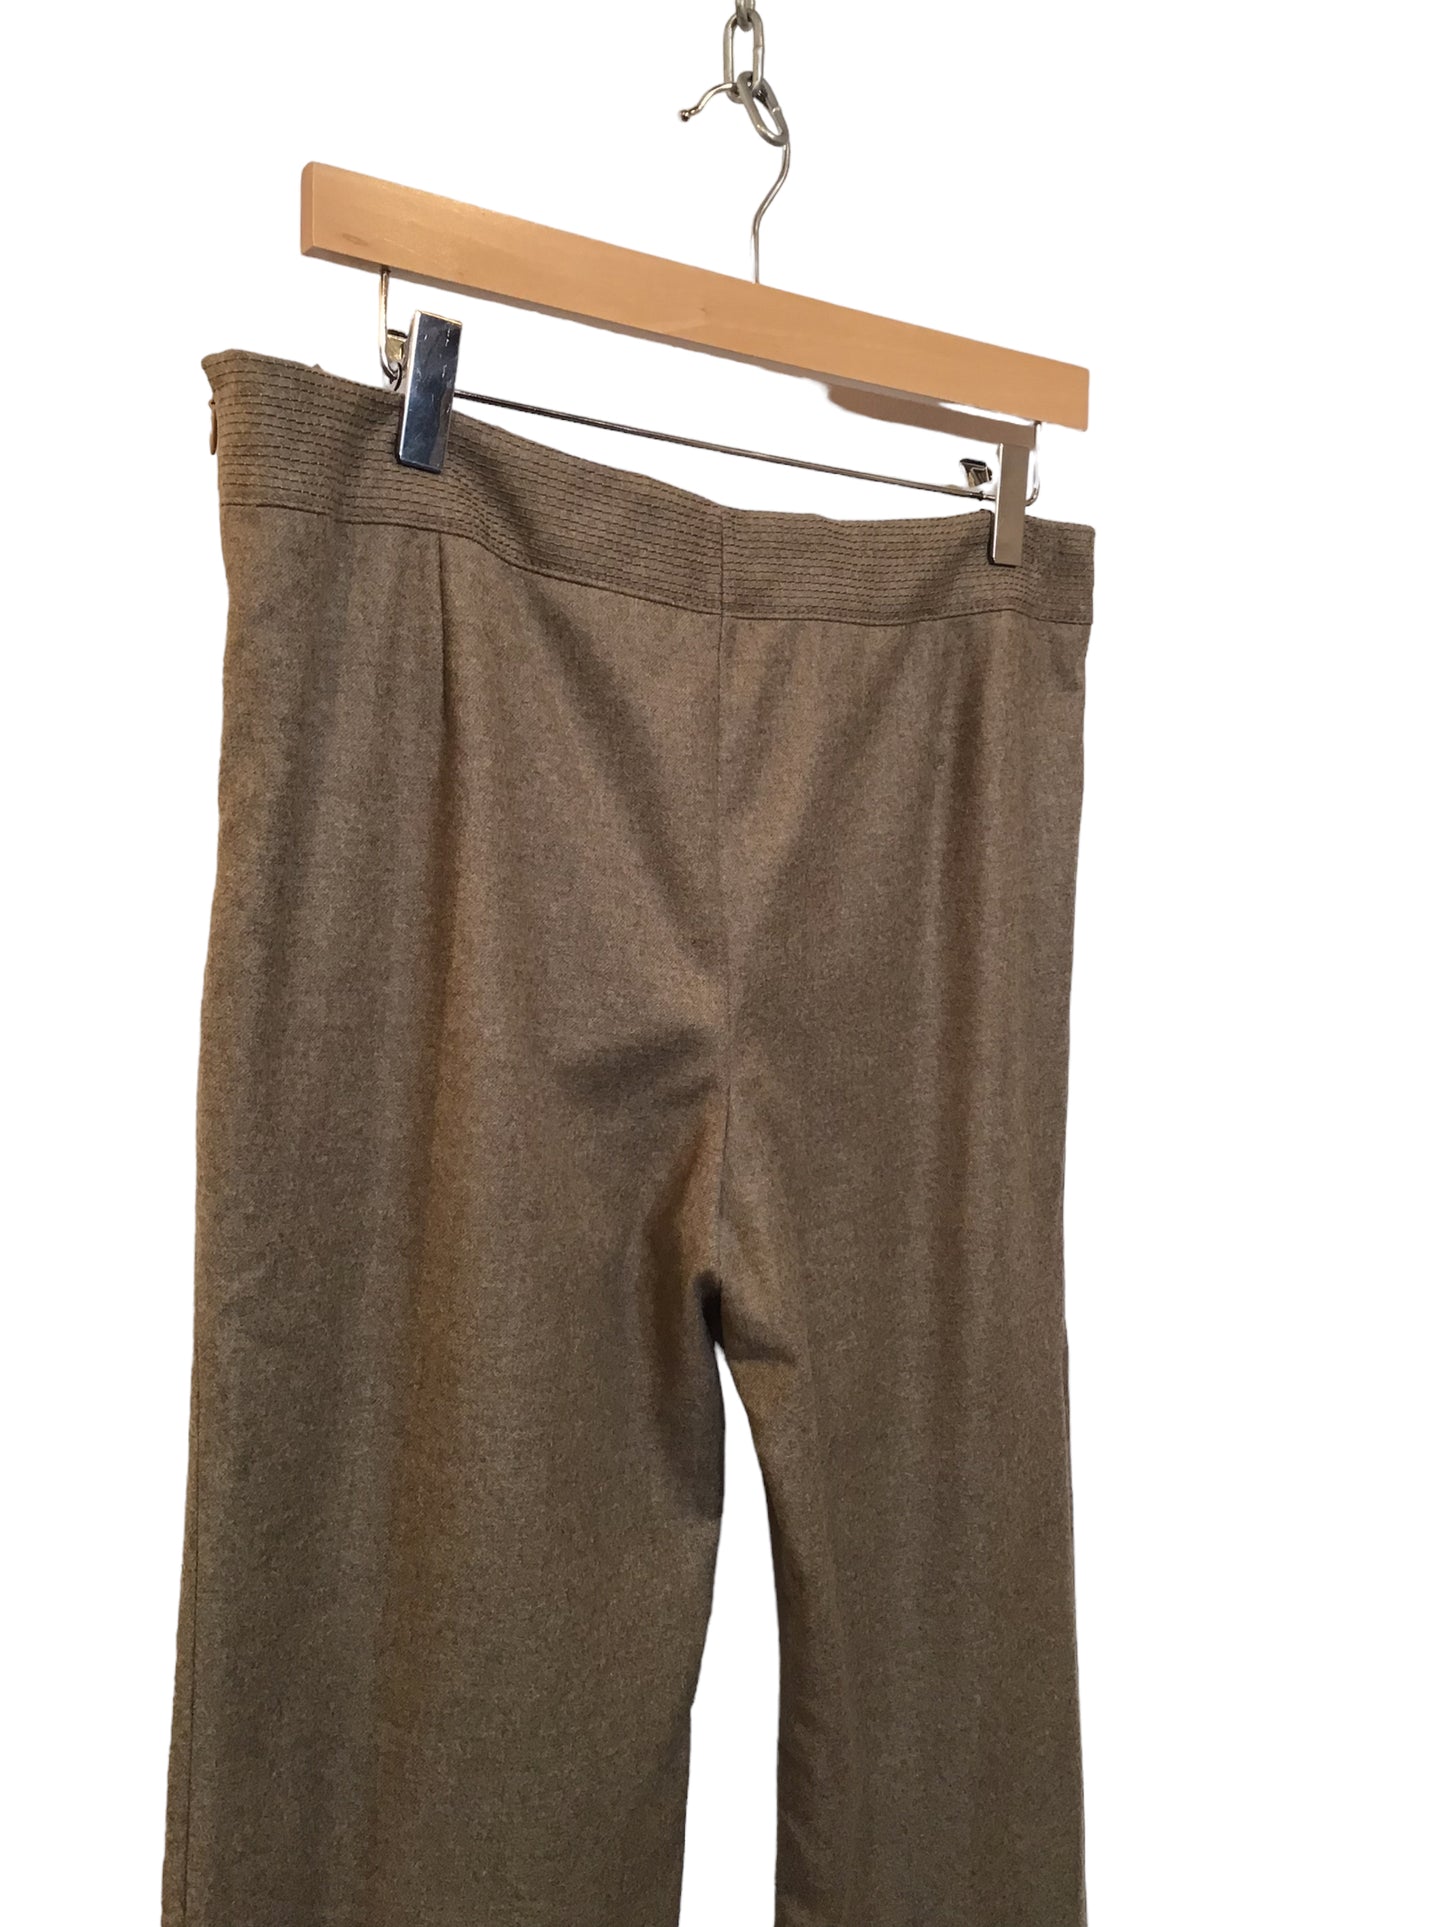 Brown Woollen Trousers (Size XL)